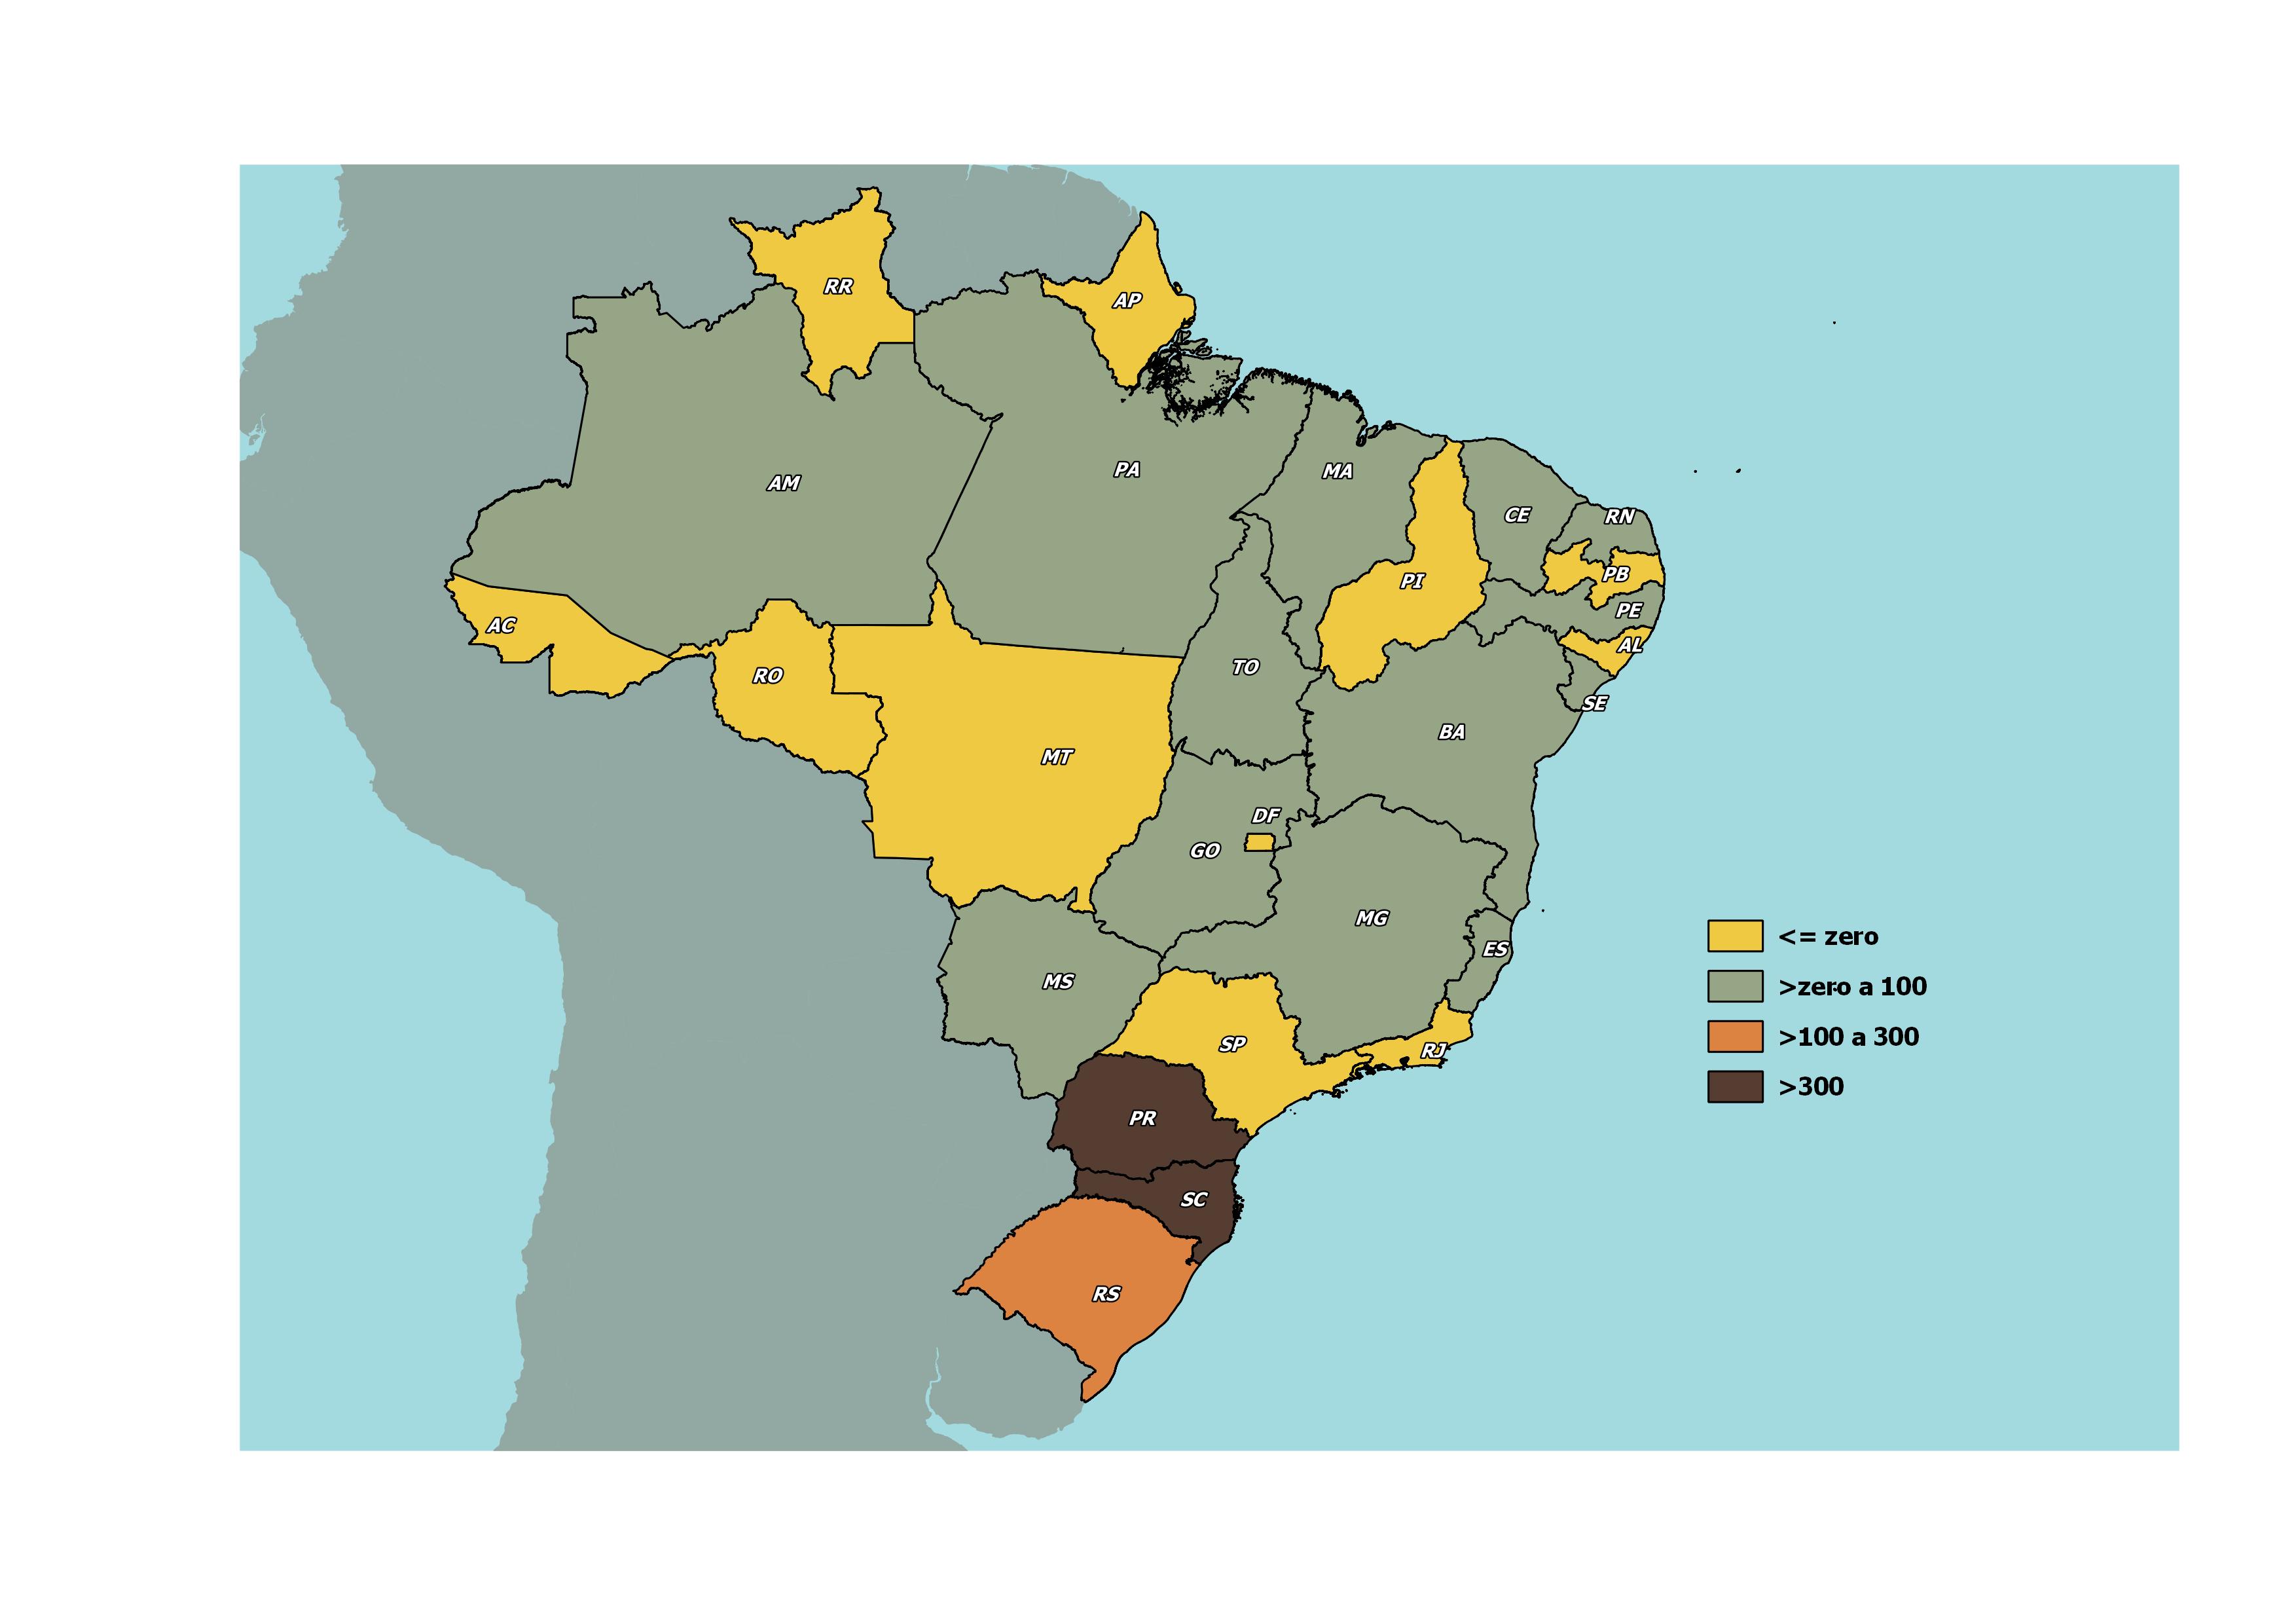 Postos de trabalhos criados para imigrantes segundo Unidade da Federação Brasil abril 2021